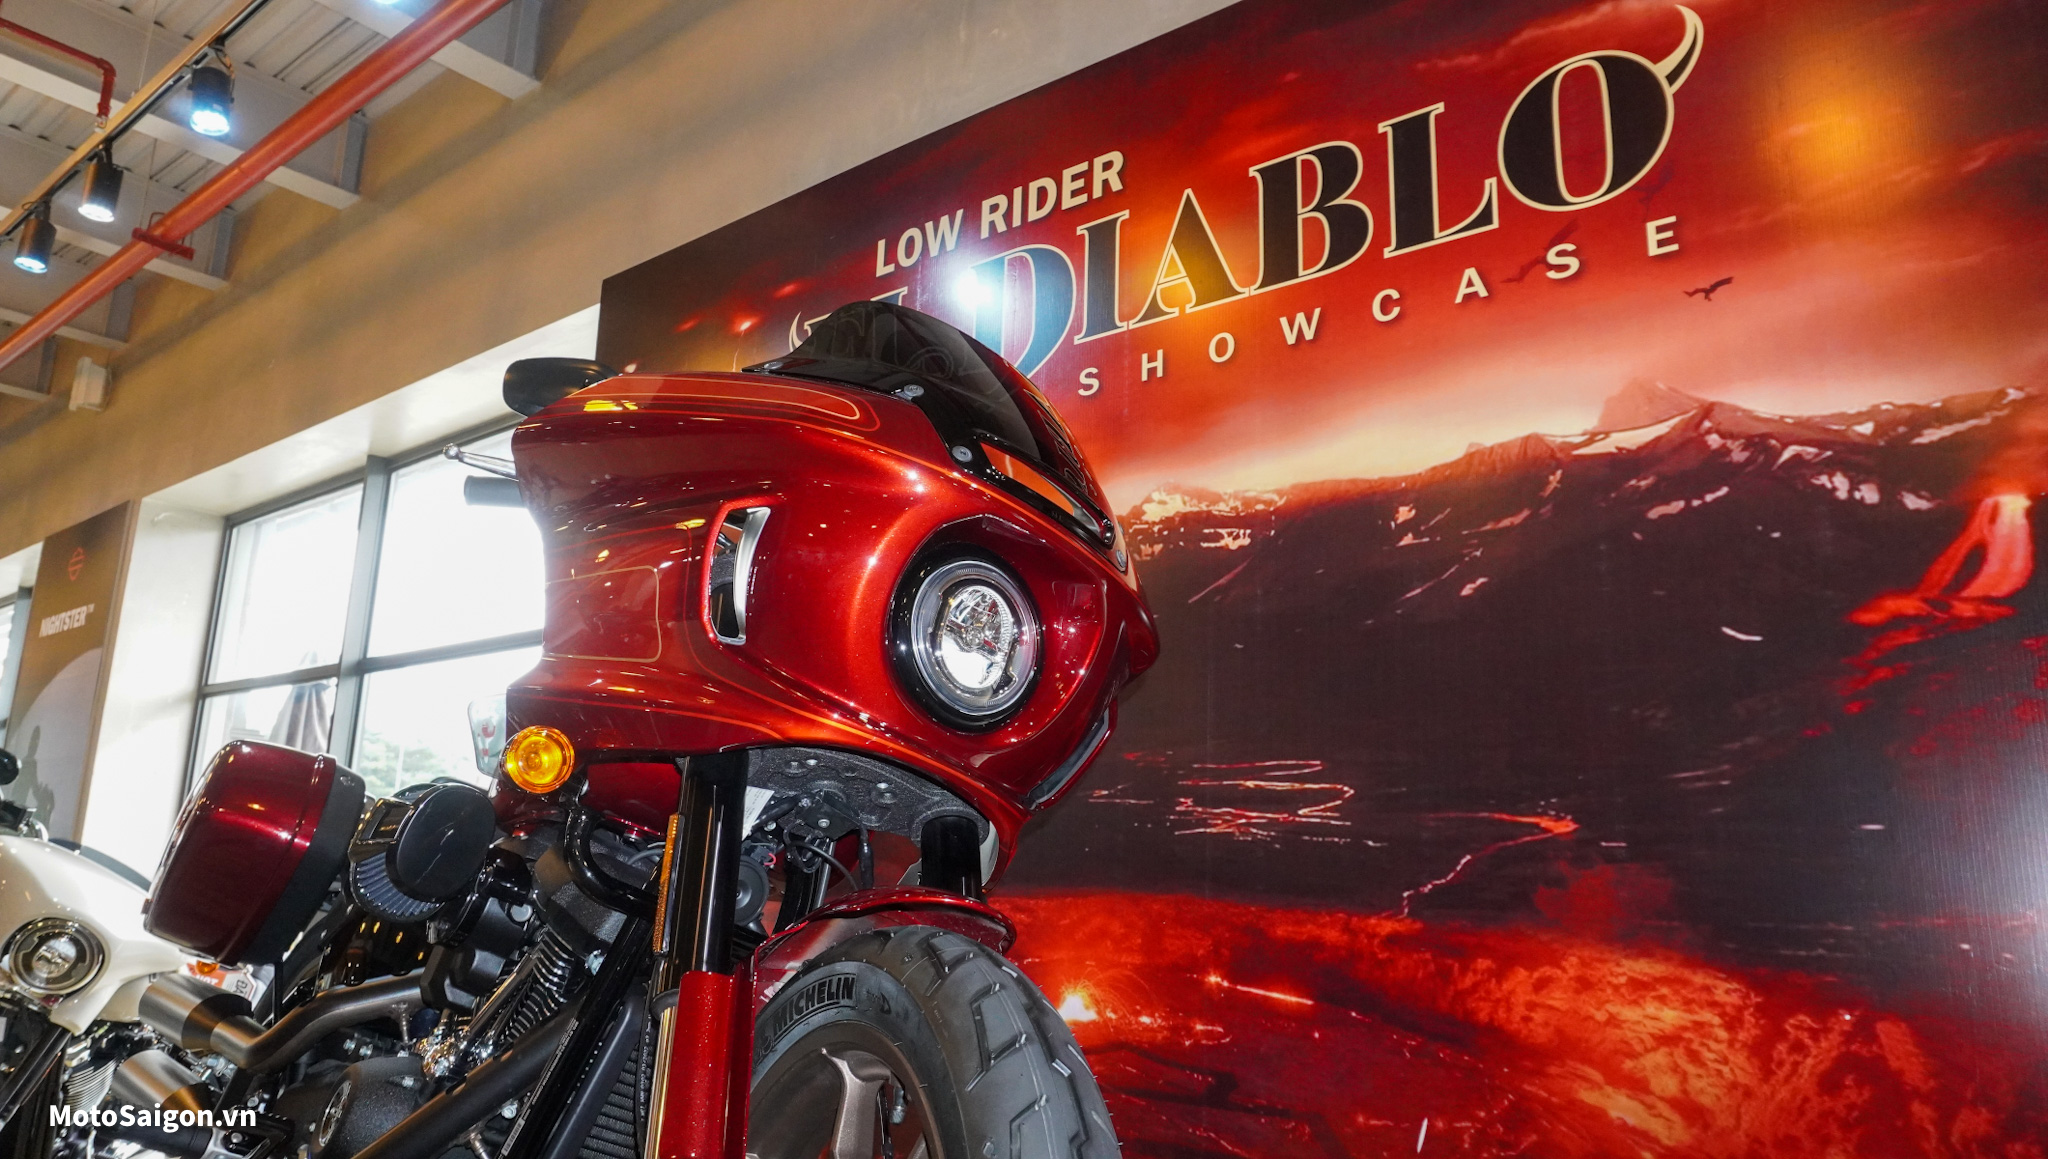 Giá xe Low Rider El Diablo đã được Harley-Davidson Việt Nam công bố